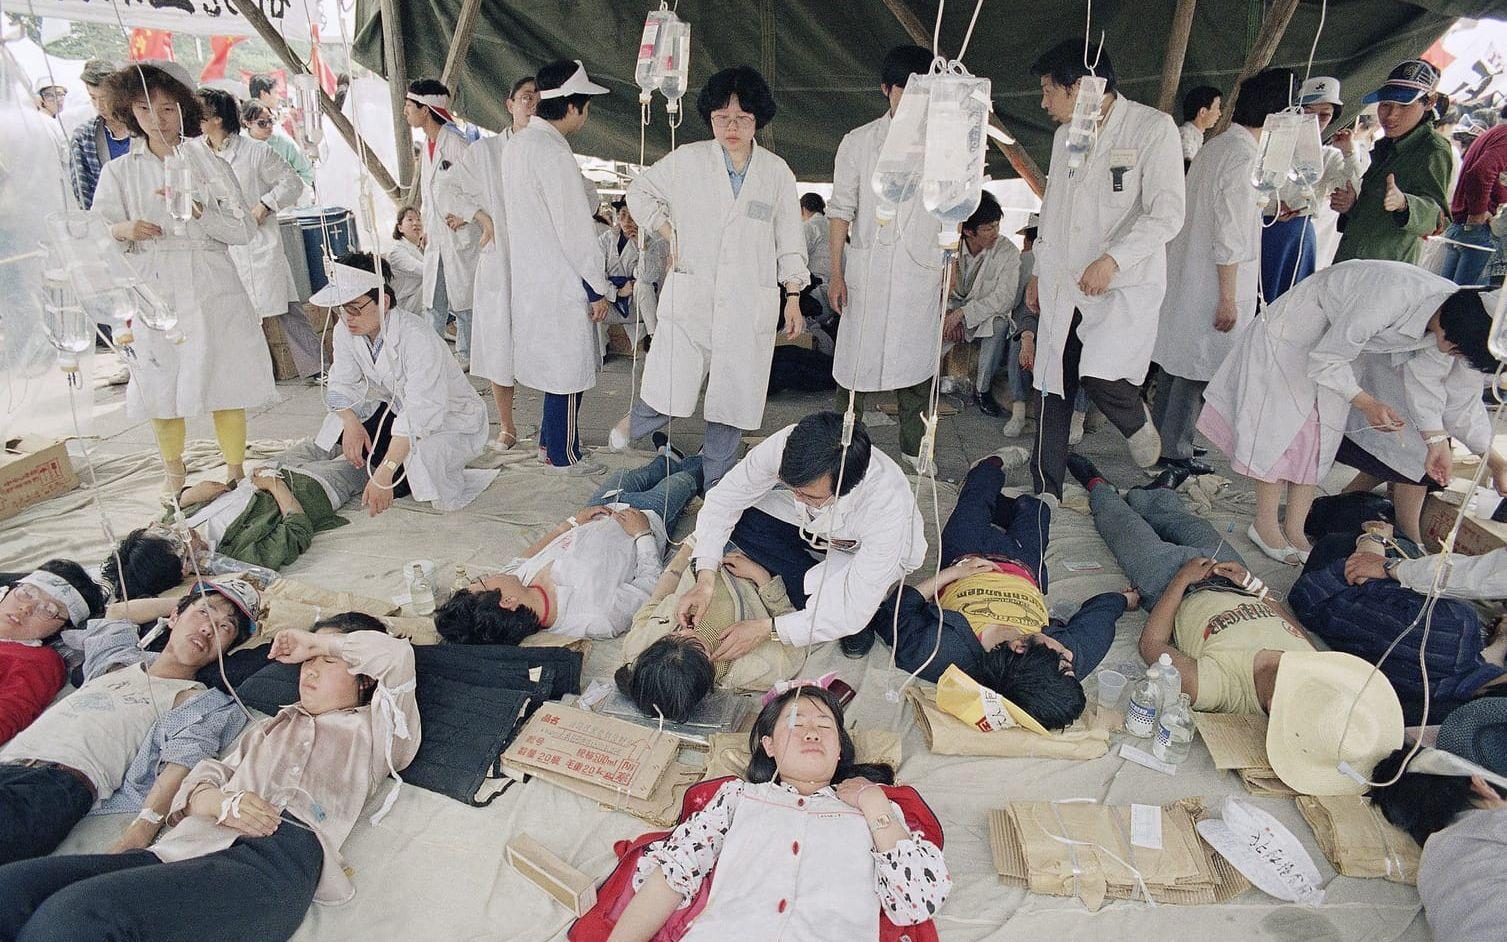 I maj bröt en hungerstrejk ut på torget. Sjukvårdare tog hand om demonstranter som blivit sjuka av hunger i ett fältsjukhus som sattes upp på torget.